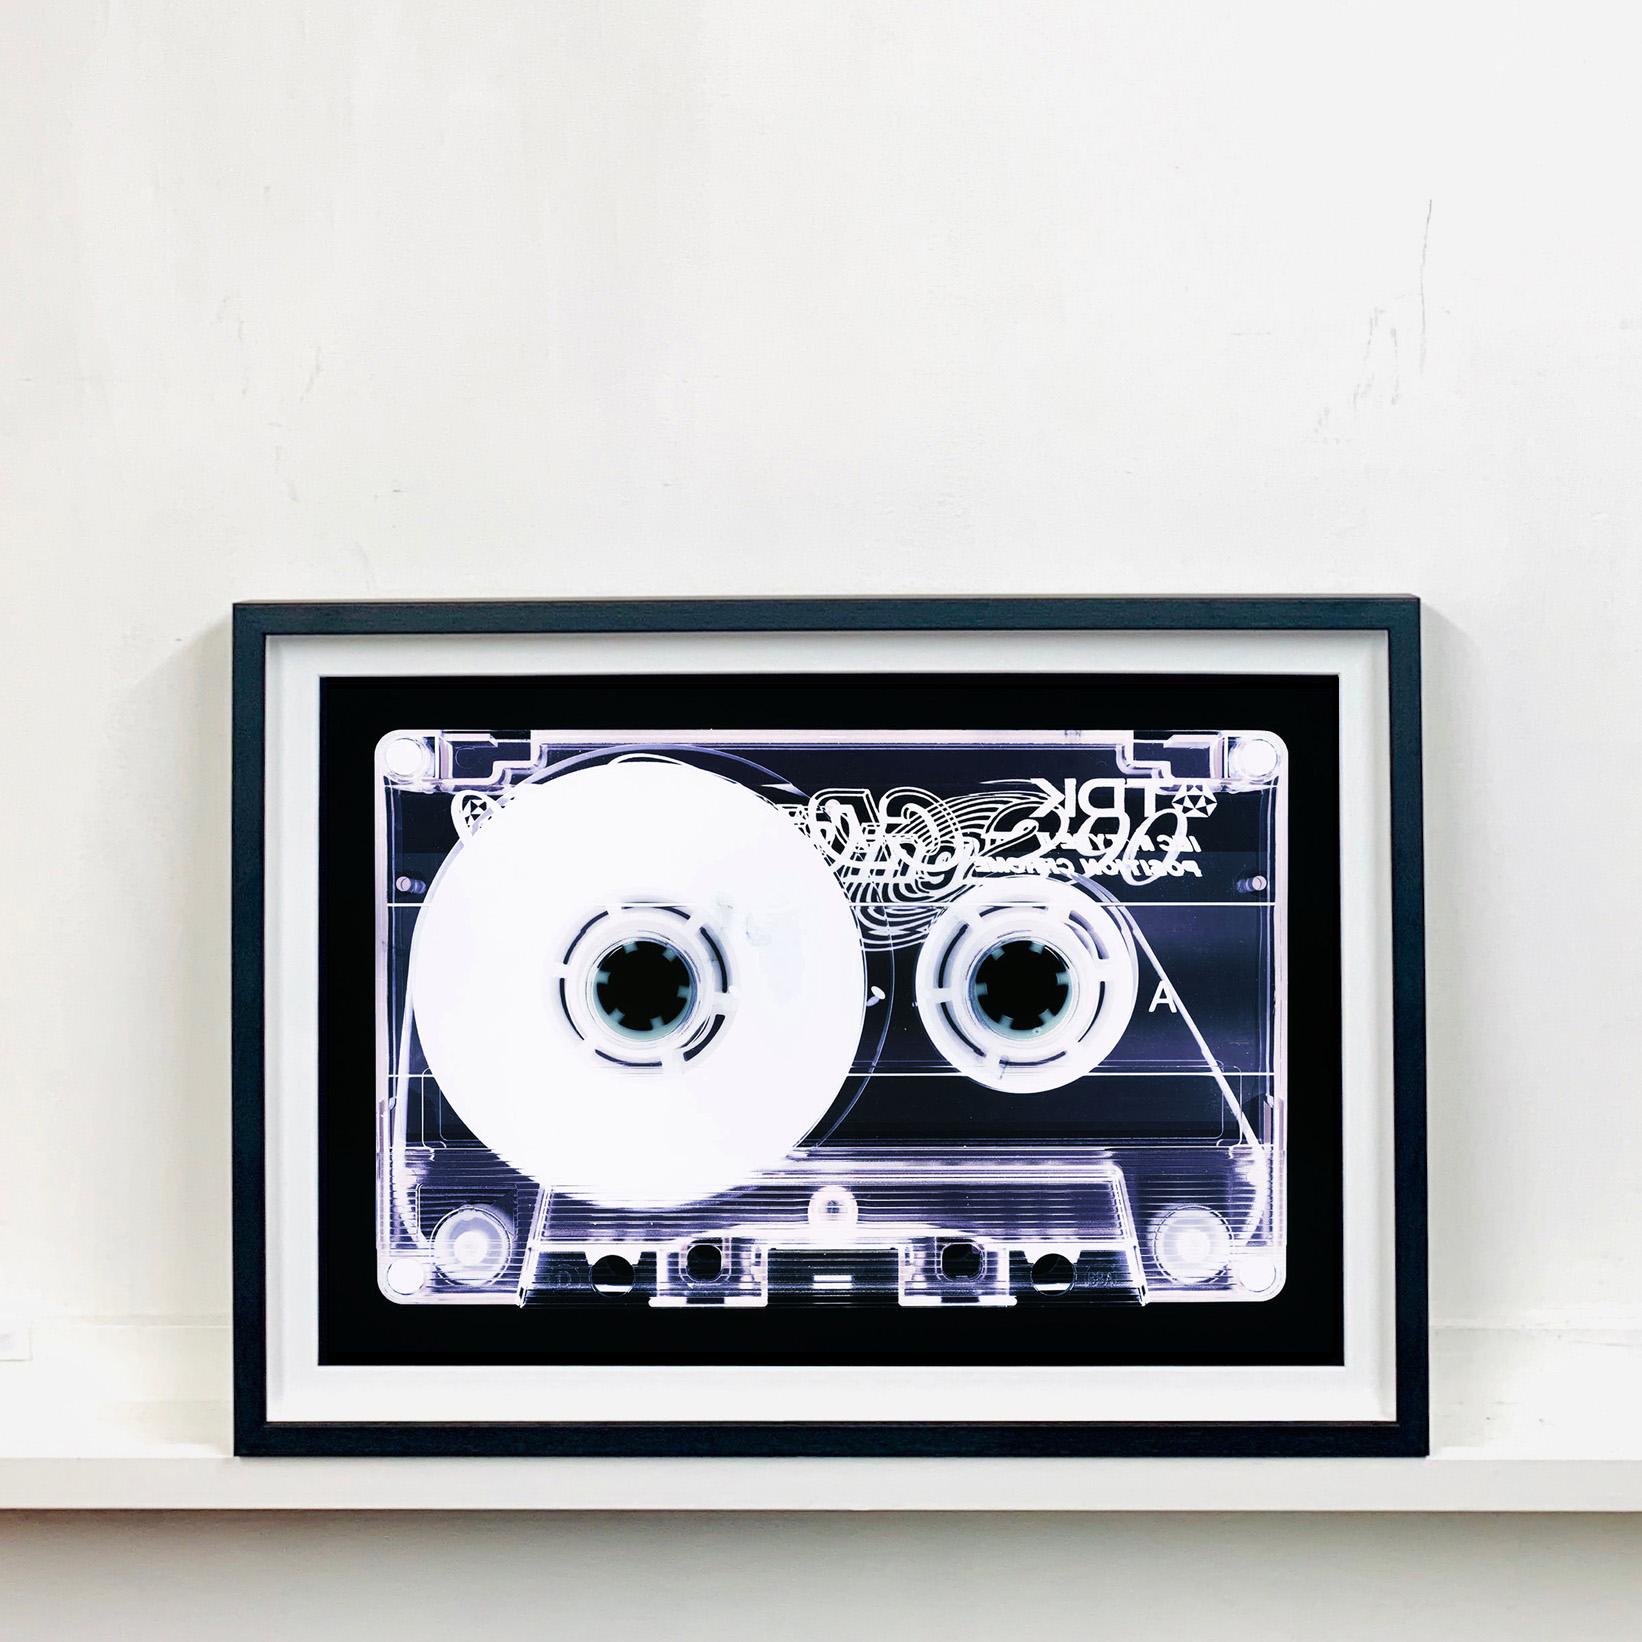 Tape-Kollektion - Blank Tape Seite A - Konzeptionelle Farbe Musik Kunst (Pop-Art), Photograph, von Heidler & Heeps